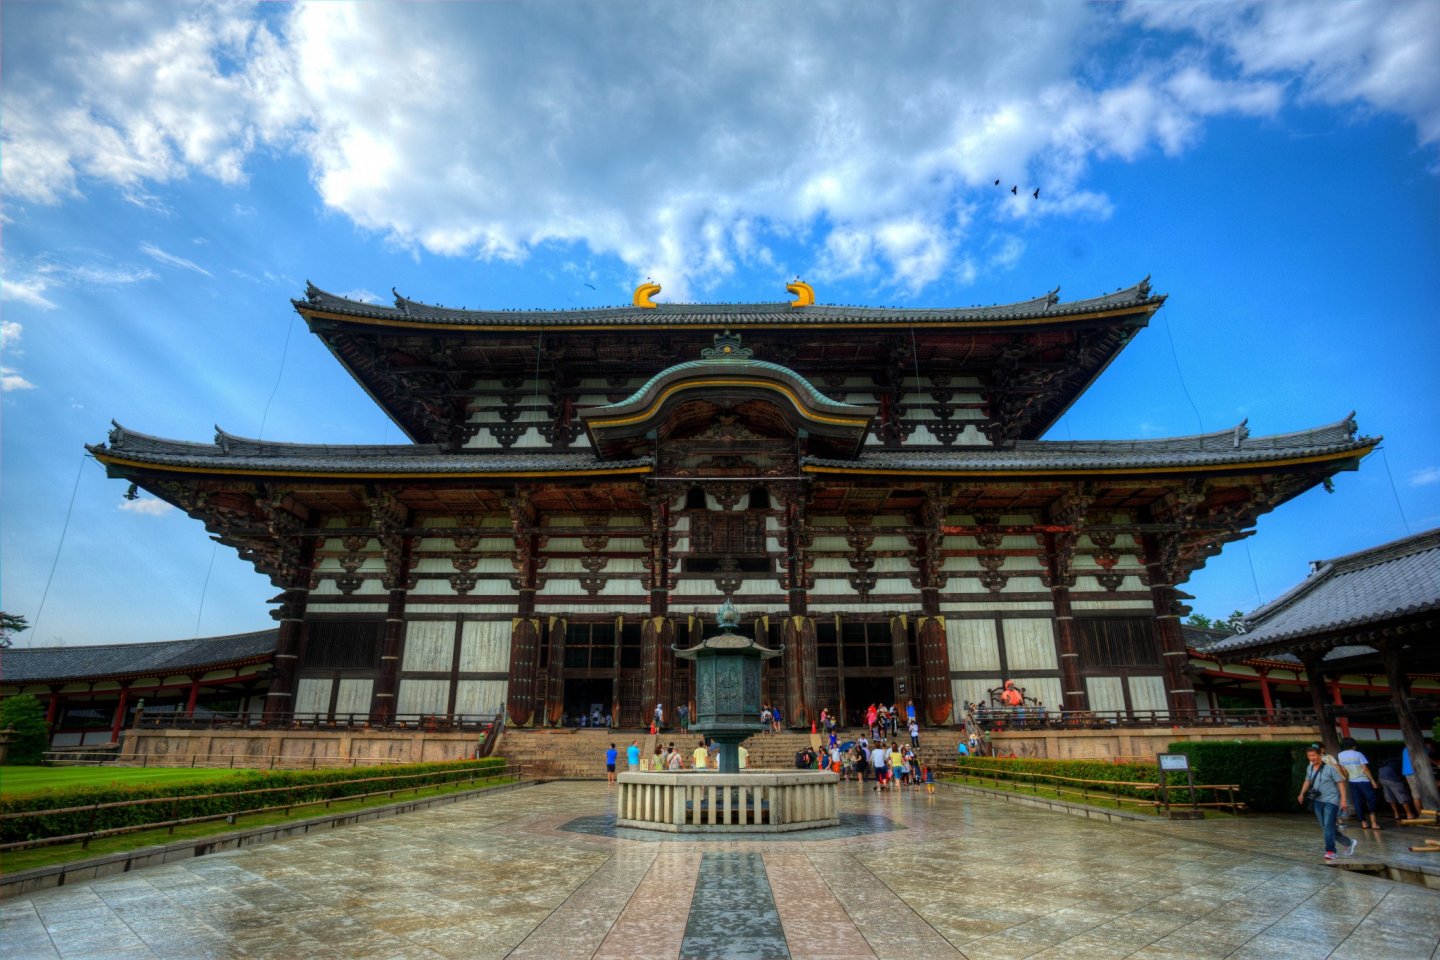 Tour du lịch Nhật Bản mùa lá đỏ Nagoya - Osaka  – Nara - Kyoto - Núi Phú Sĩ - Tokyo 6 ngày 5 đêm